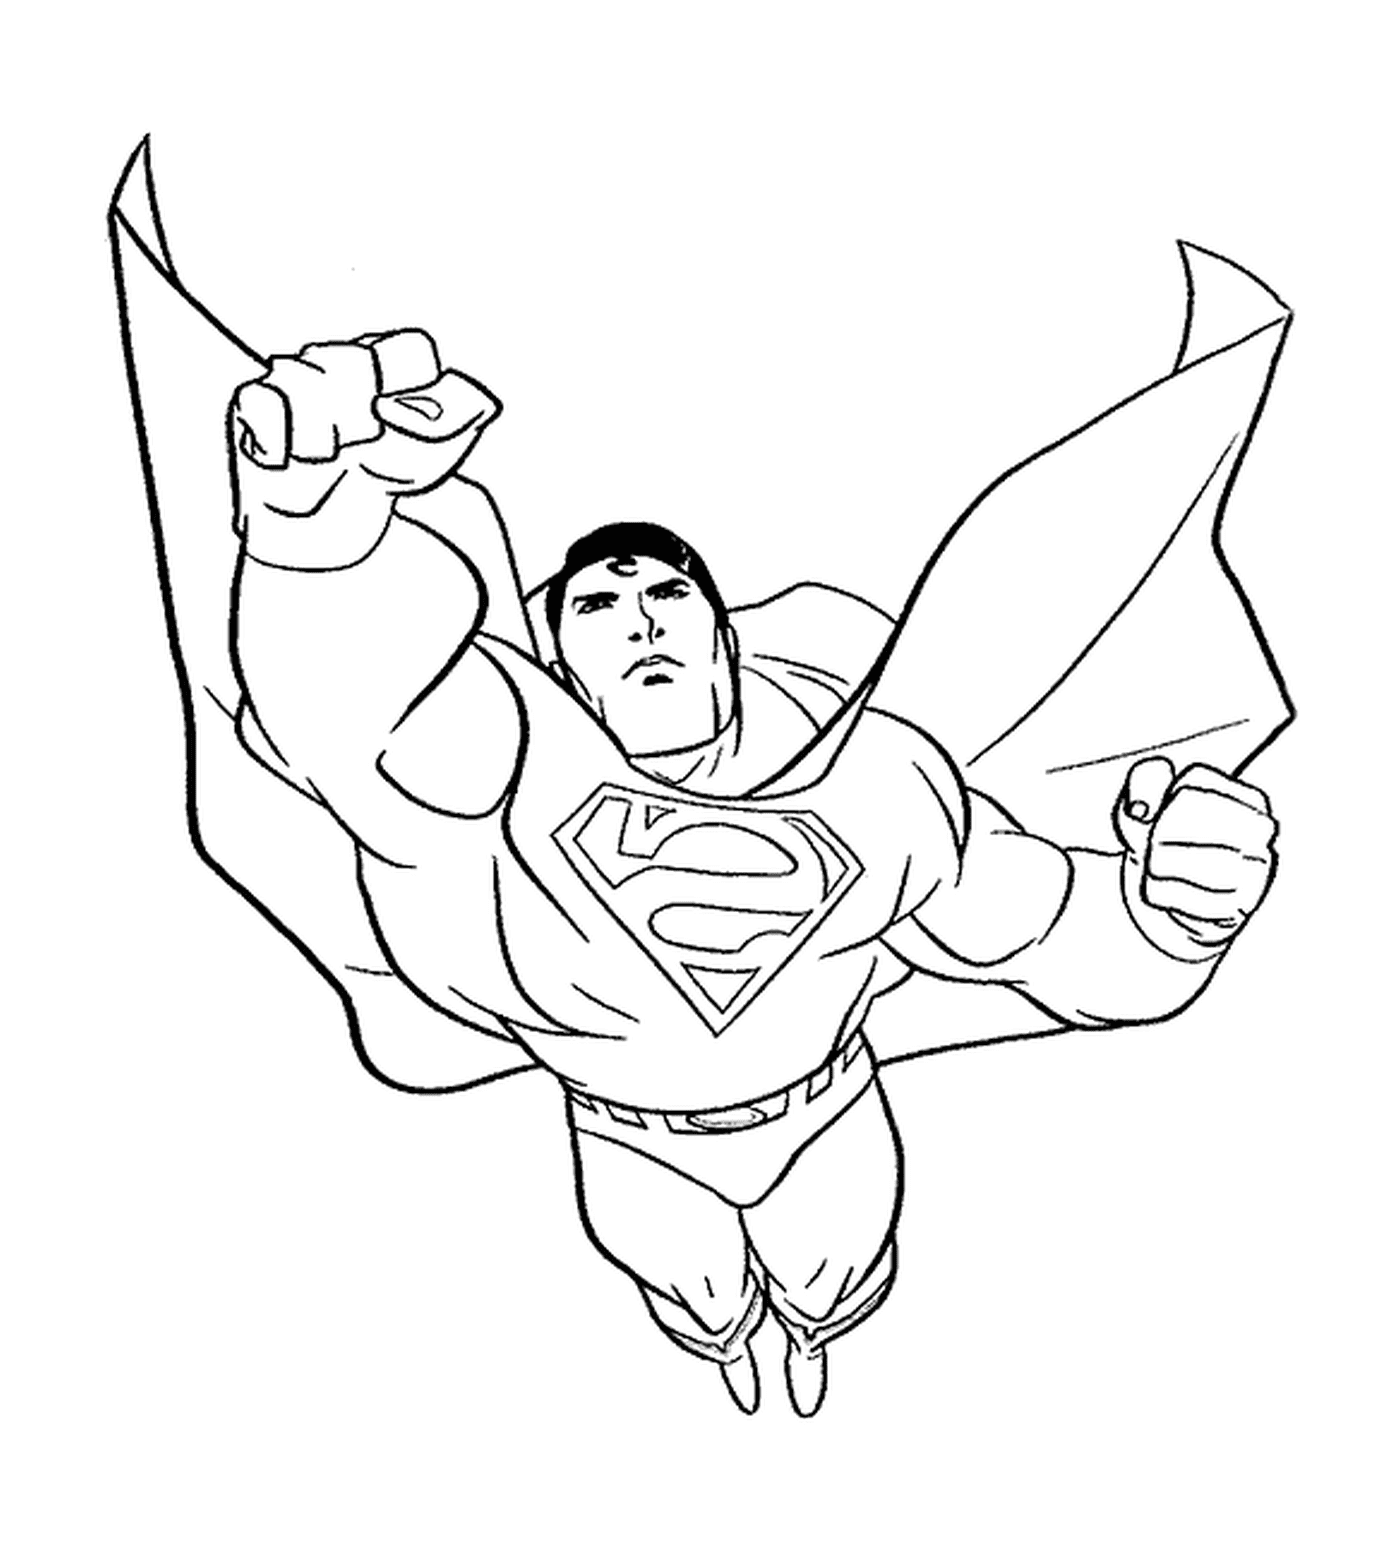  Супермен с кулаком вперед 